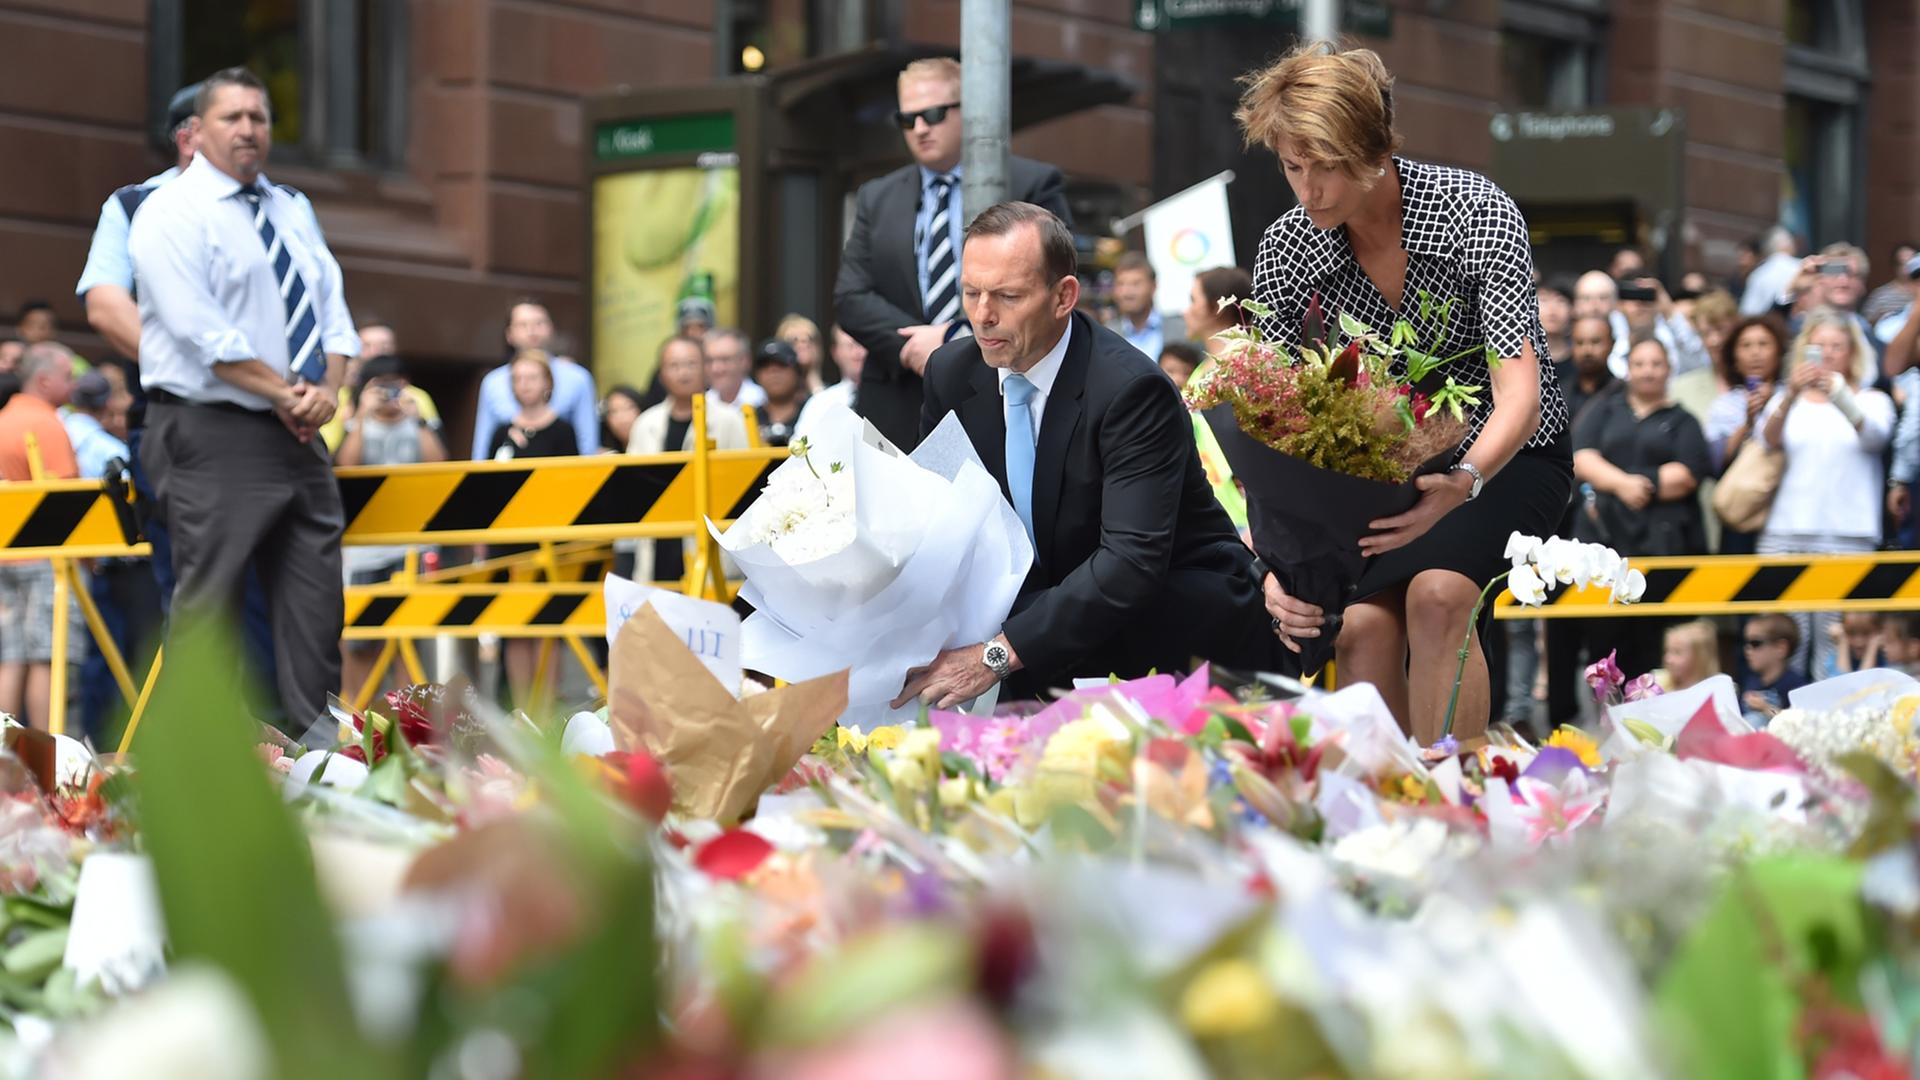 Nach der Geiselnahme in einem Café in Sydney: Australiens Premierminister Tony Abbott und seine Frau Margaret legen Blumen nieder